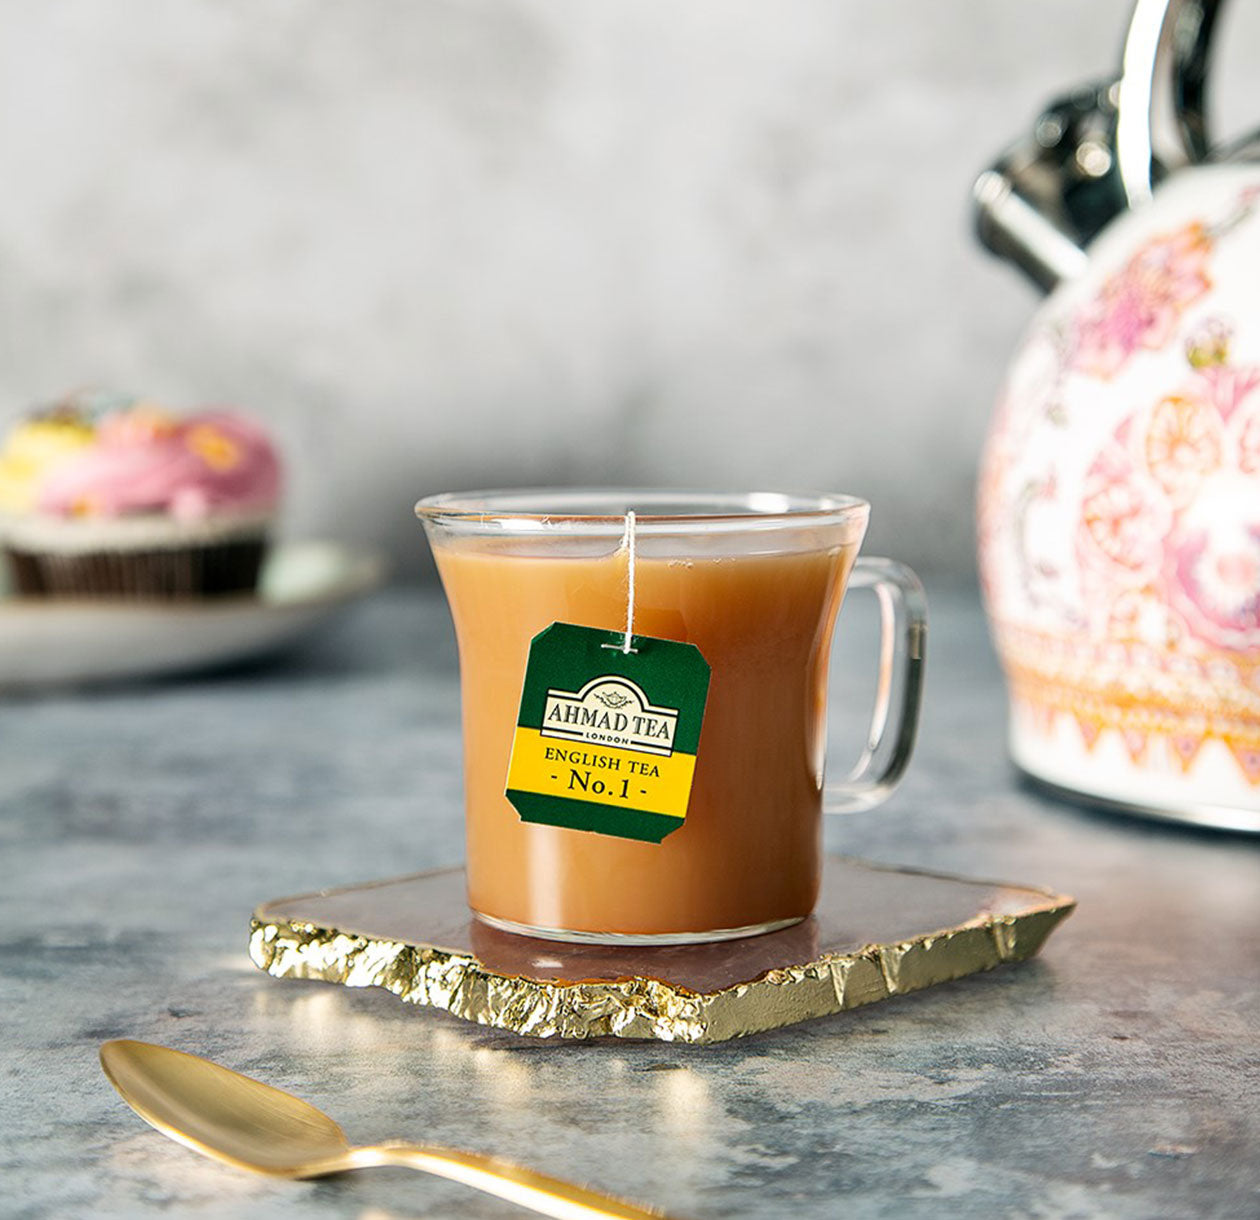 Tea Chest + Free Mug – AHMAD TEA